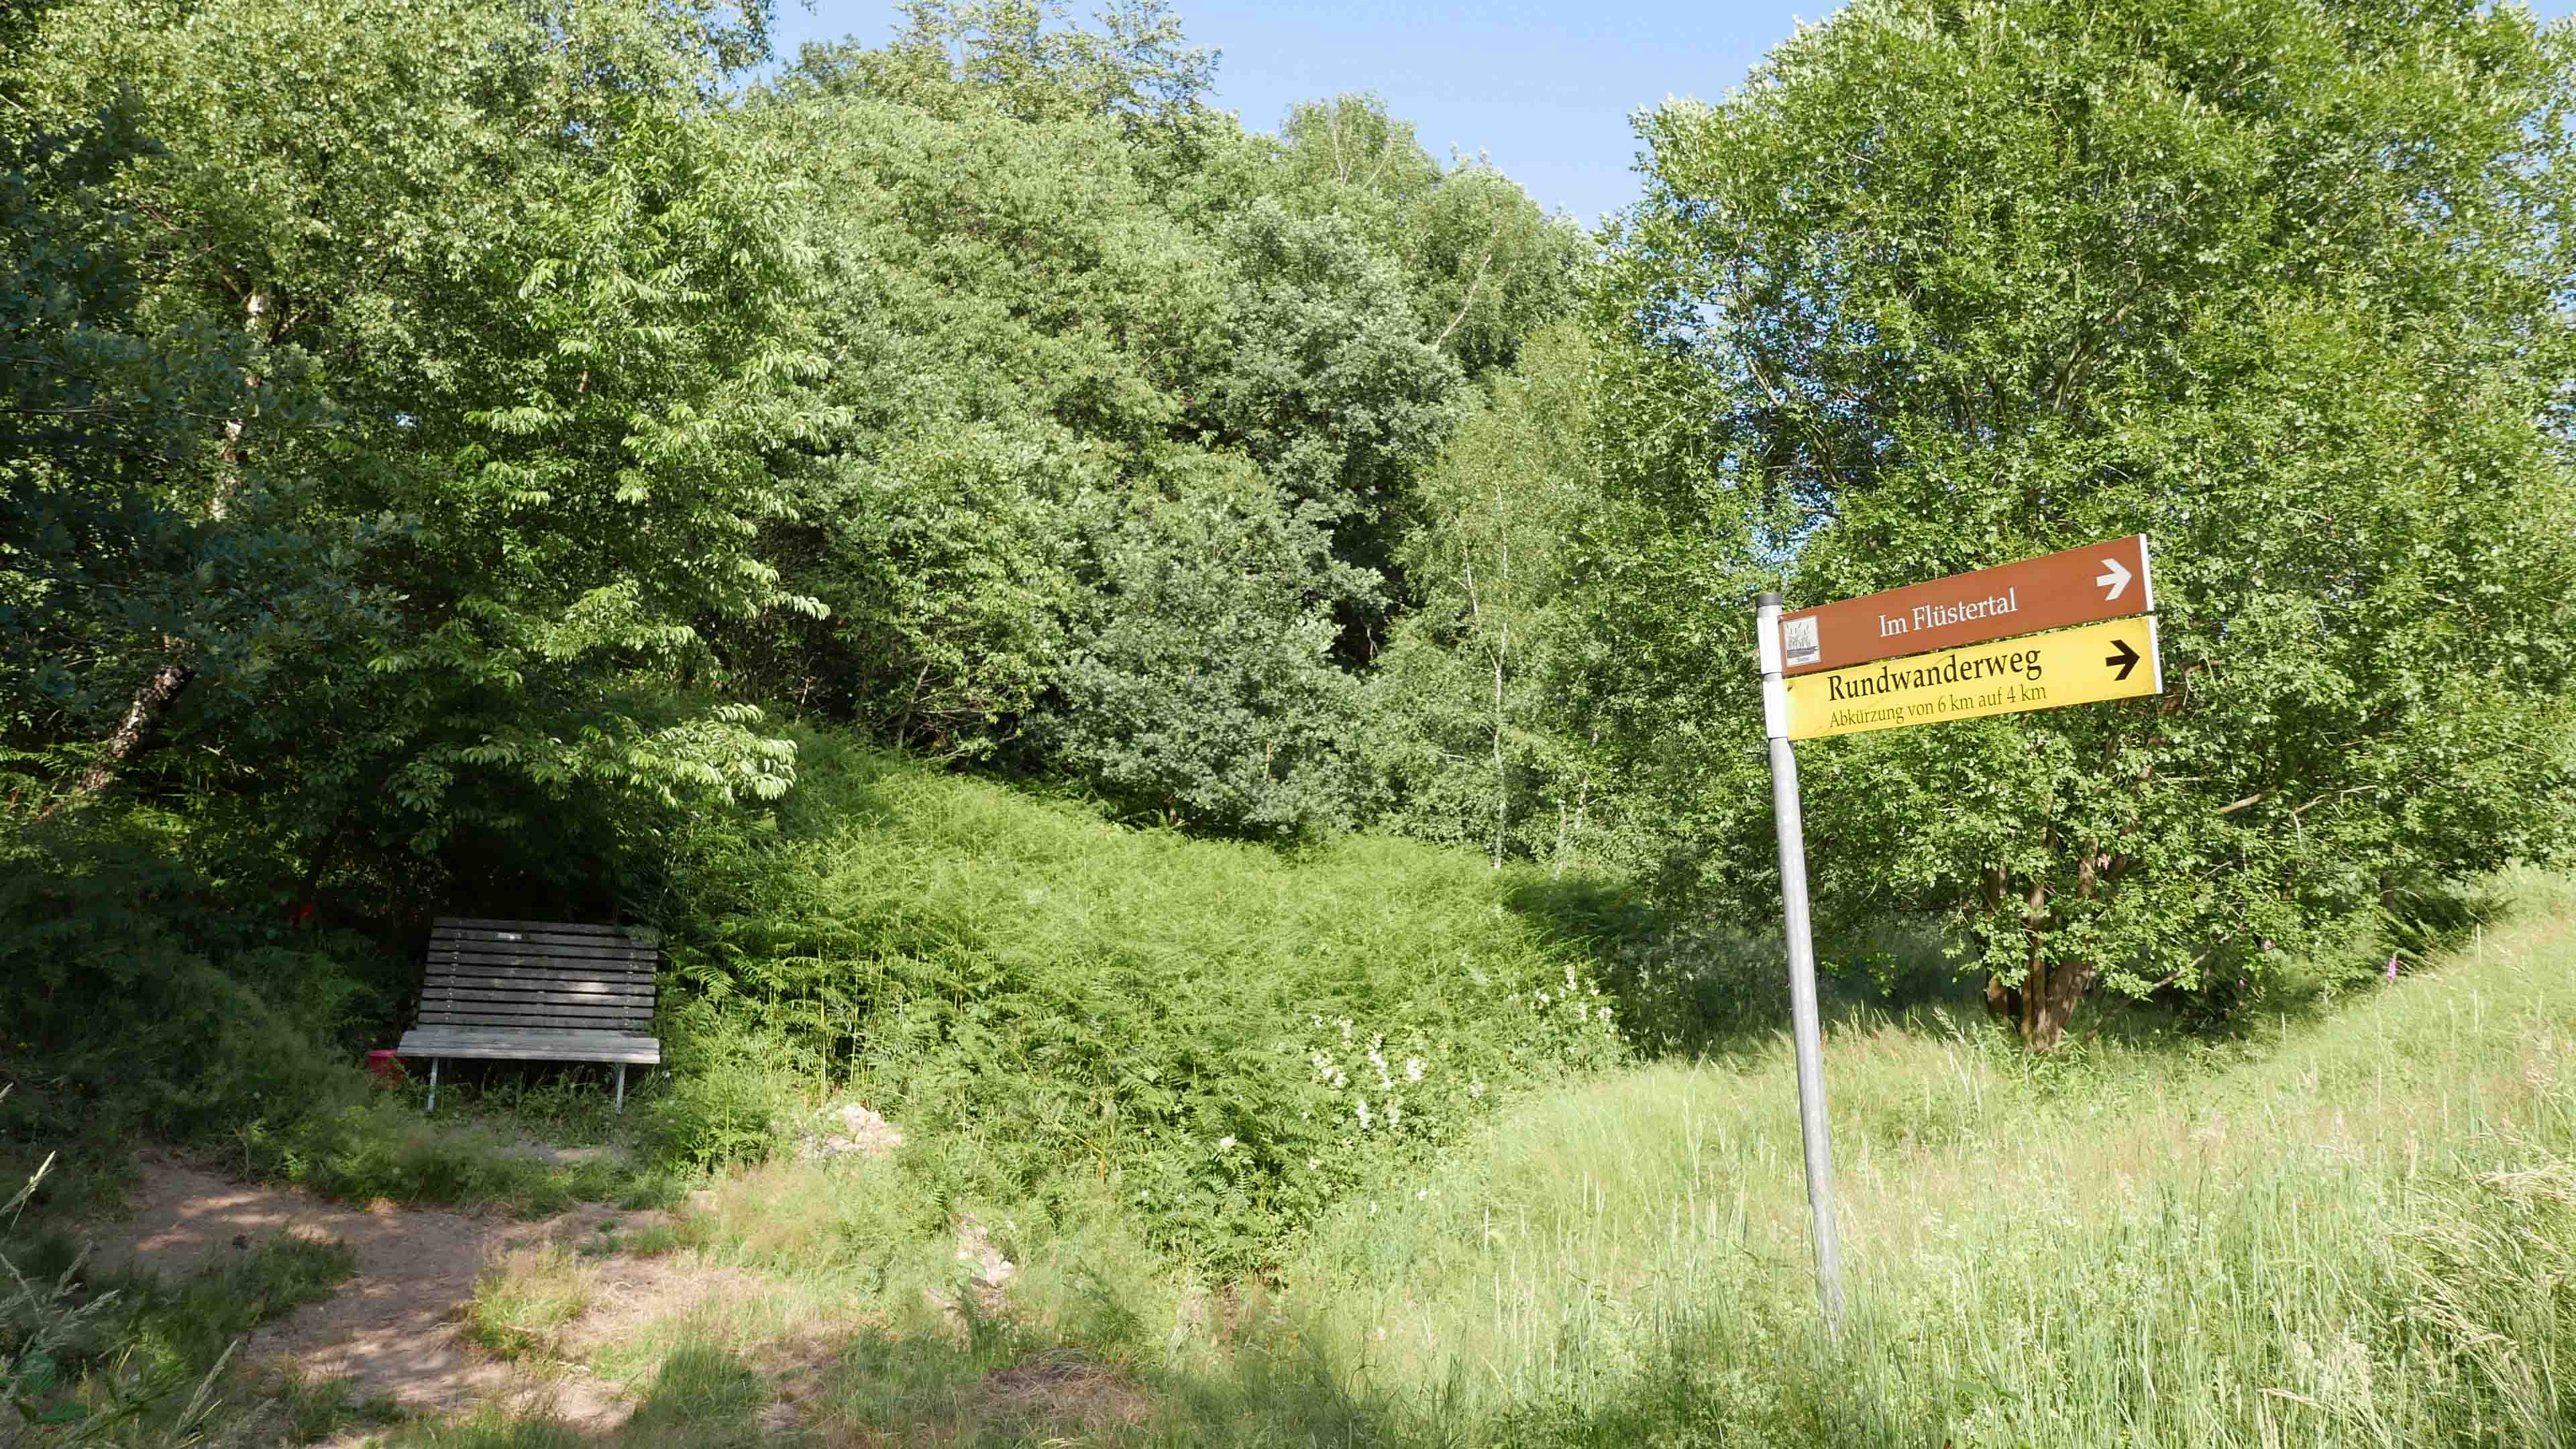 Reichshof-Wildberg: Ein Landhaus für die Familie im "Kinderdorf" Wildberg  , nur 100 m vom Haus: Das malerische Flüstertal